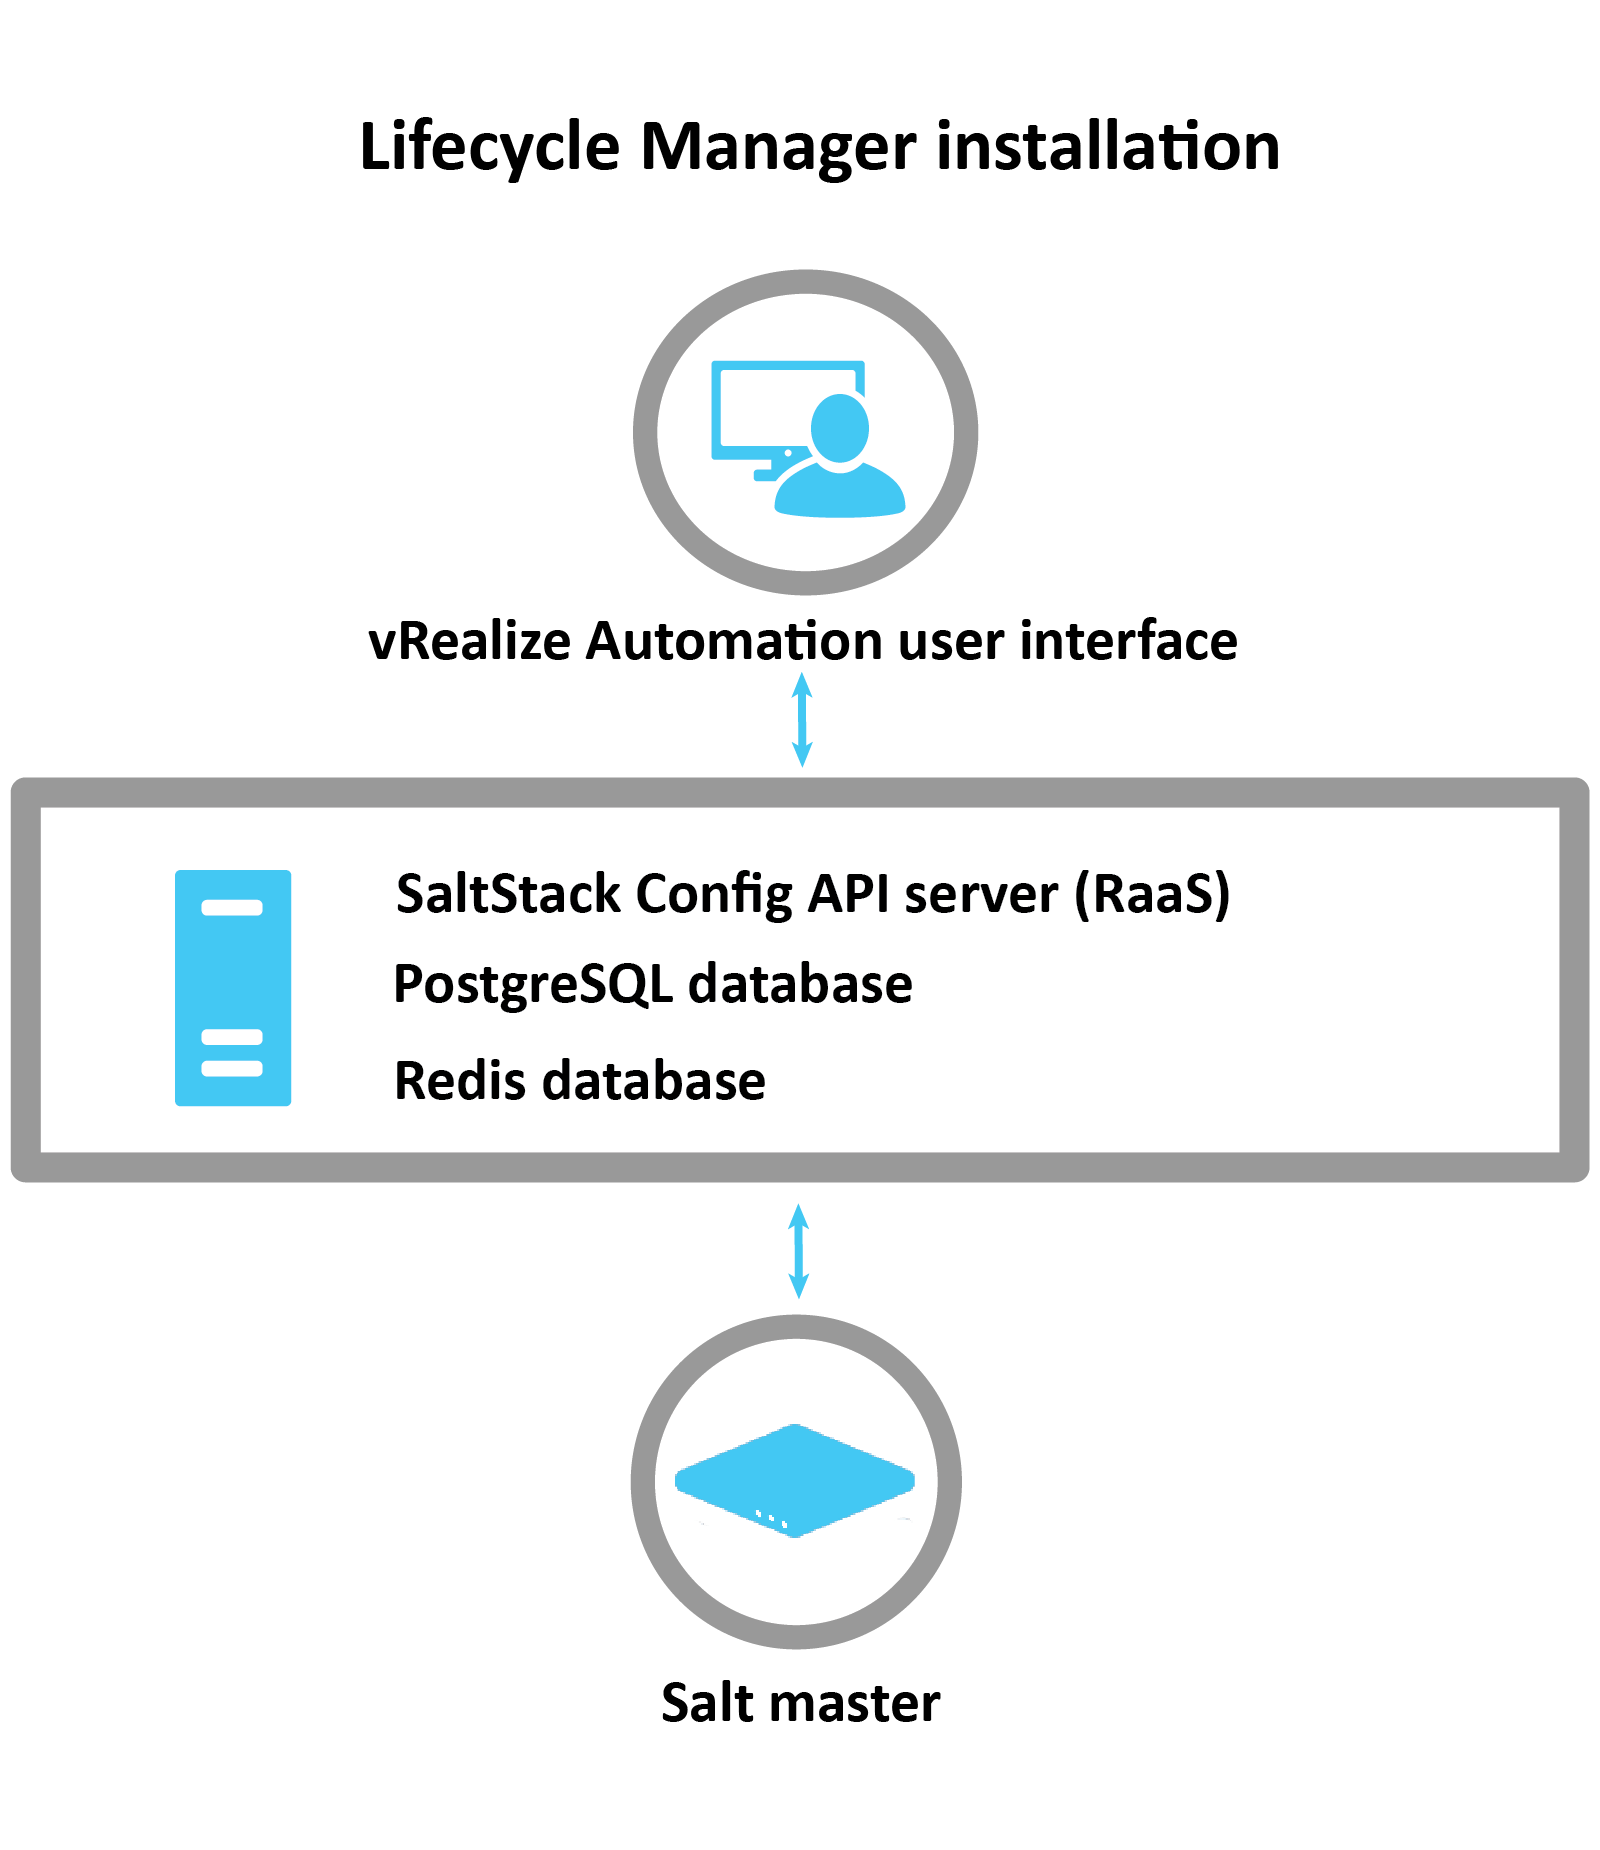 说明如何使用 LCM 安装 SaltStack 的图表：LCM 使用 vRA 接口安装 RaaS 服务器、Postgres 数据库和 Redis 数据库。安装后，将配置 Salt 主节点。